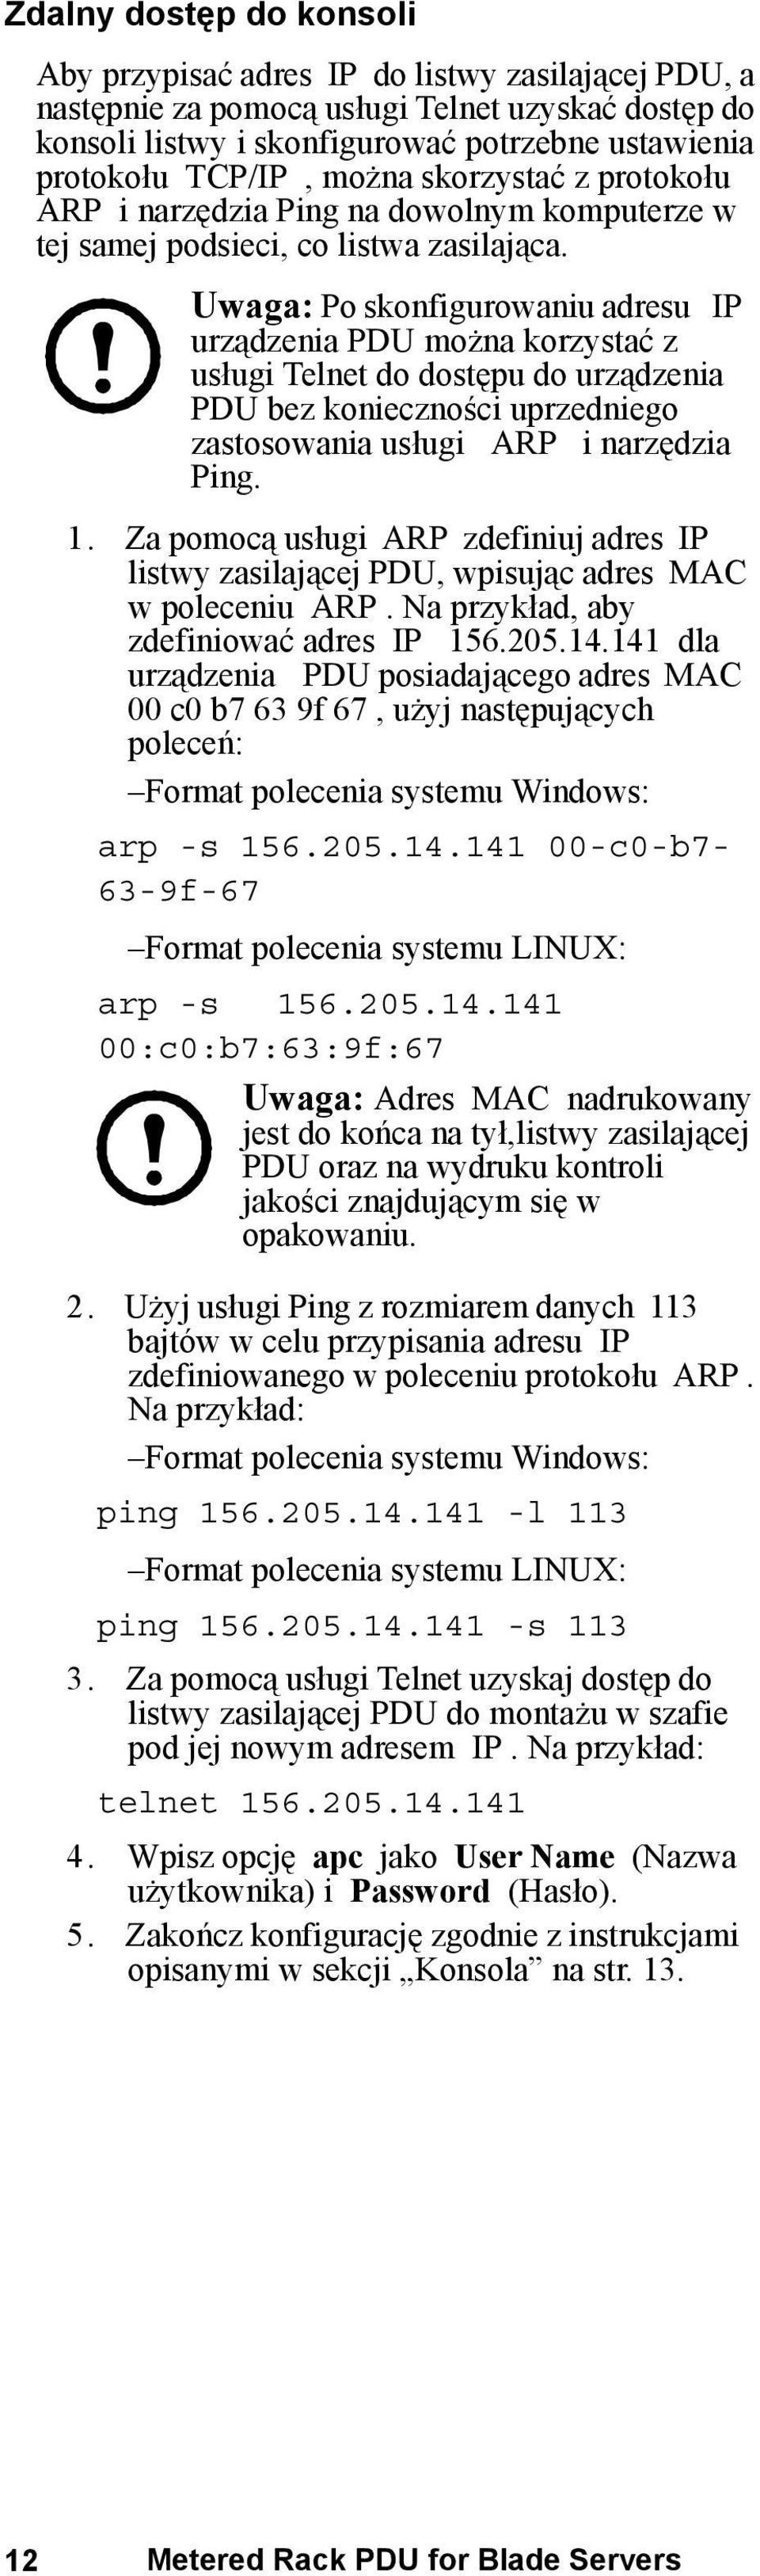 Uwaga: Po skonfigurowaniu adresu IP urządzenia PDU można korzystać z usługi Telnet do dostępu do urządzenia PDU bez konieczności uprzedniego zastosowania usługi ARP i narzędzia Ping. 1.